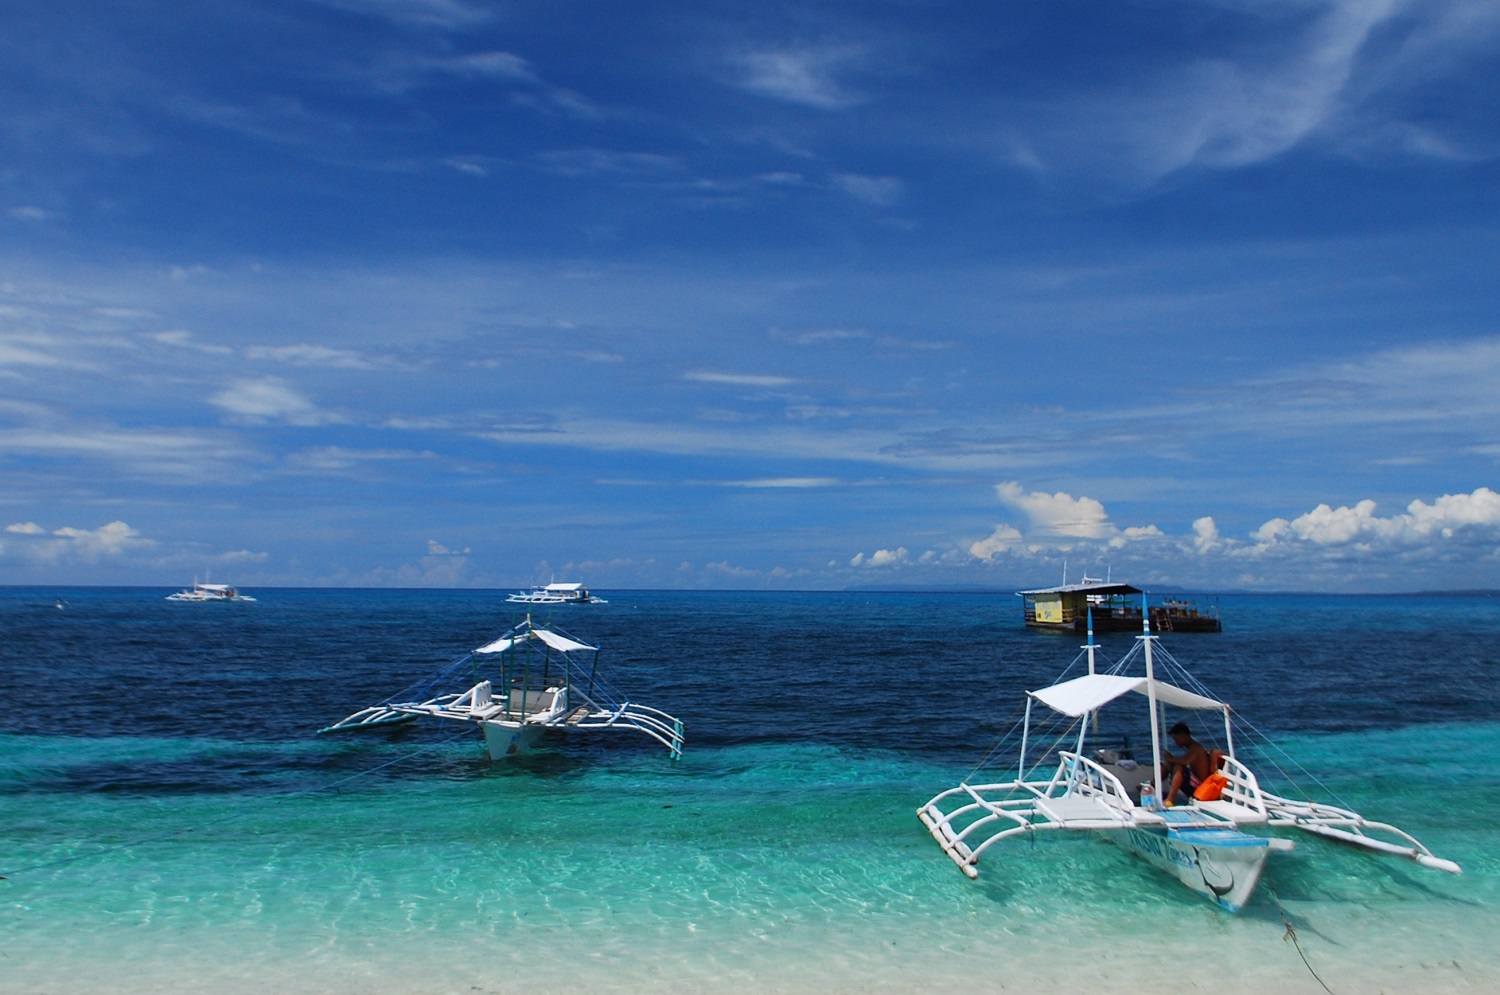 Malapascua Island, the Philippines